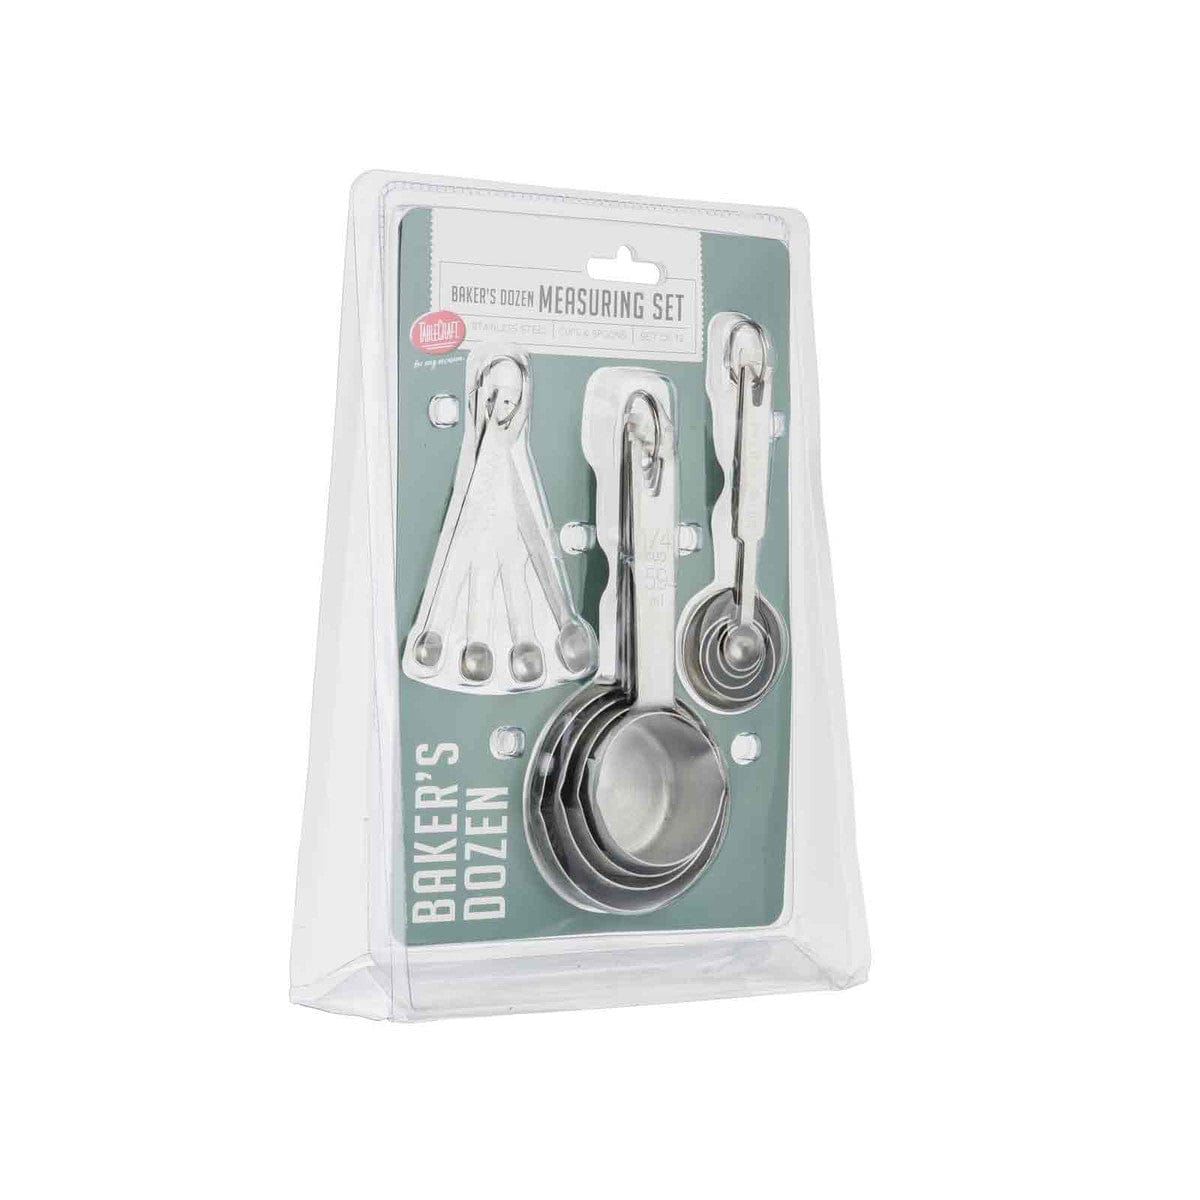 TableCraft 4pc Stainless Steel Spice Measuring Spoons - Smidgen Pinch Dash  & Tad